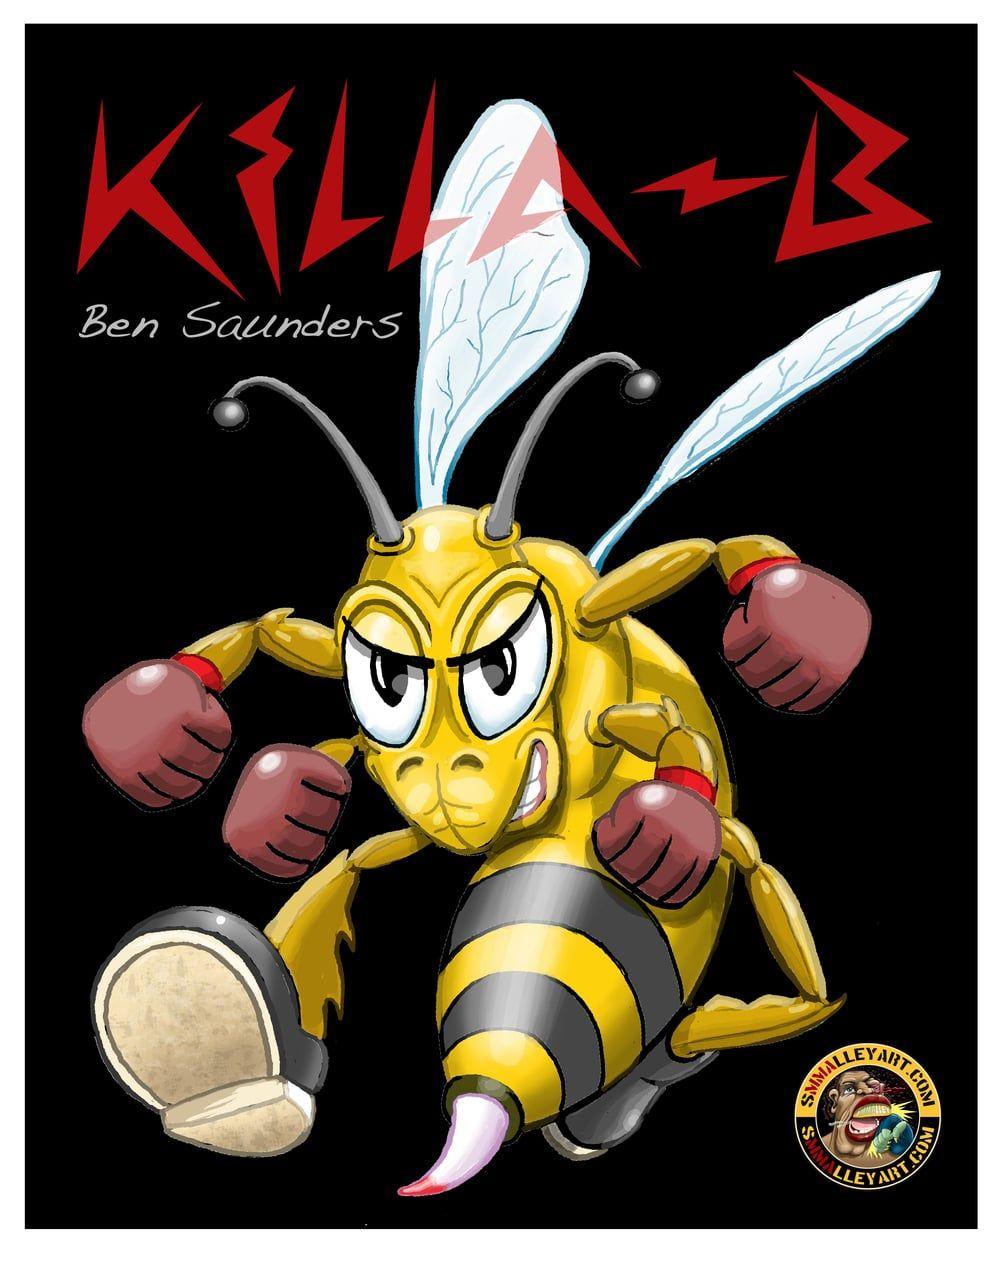 Killa B Logo - Ben Killa B Saunders